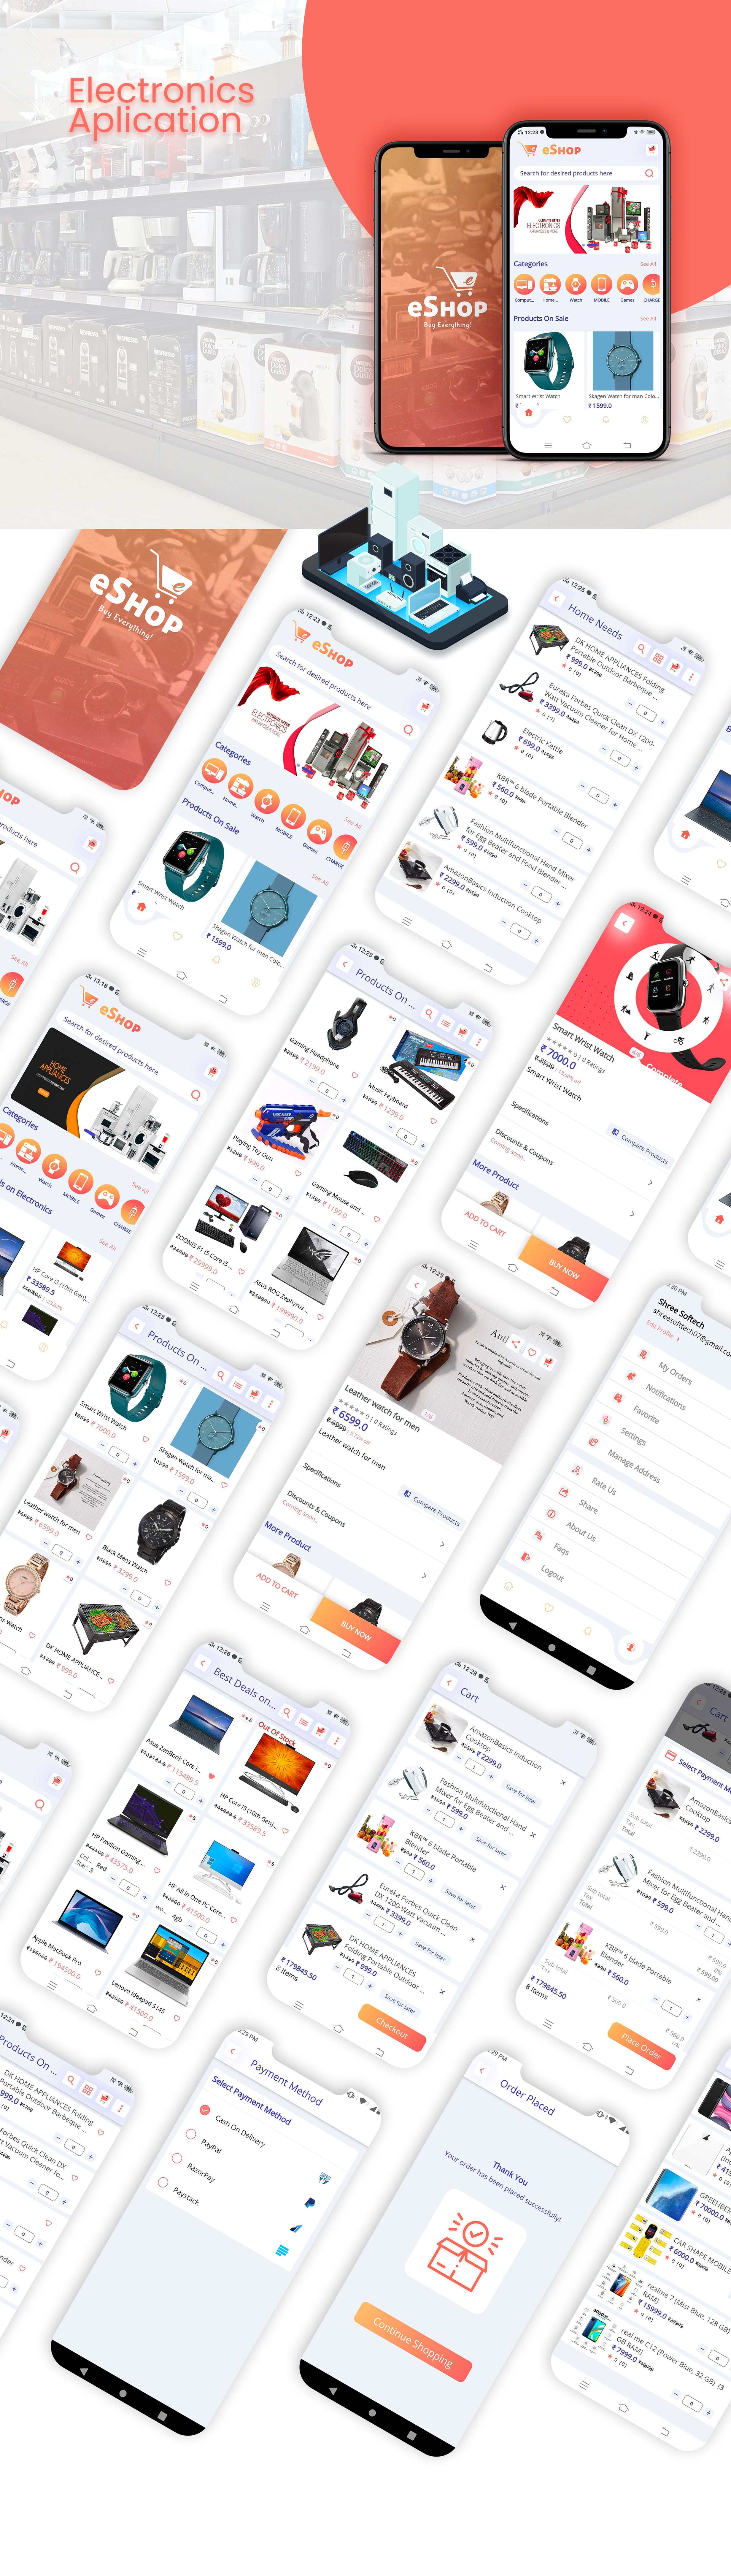 eShop - Flutter E-commerce Full App - 23